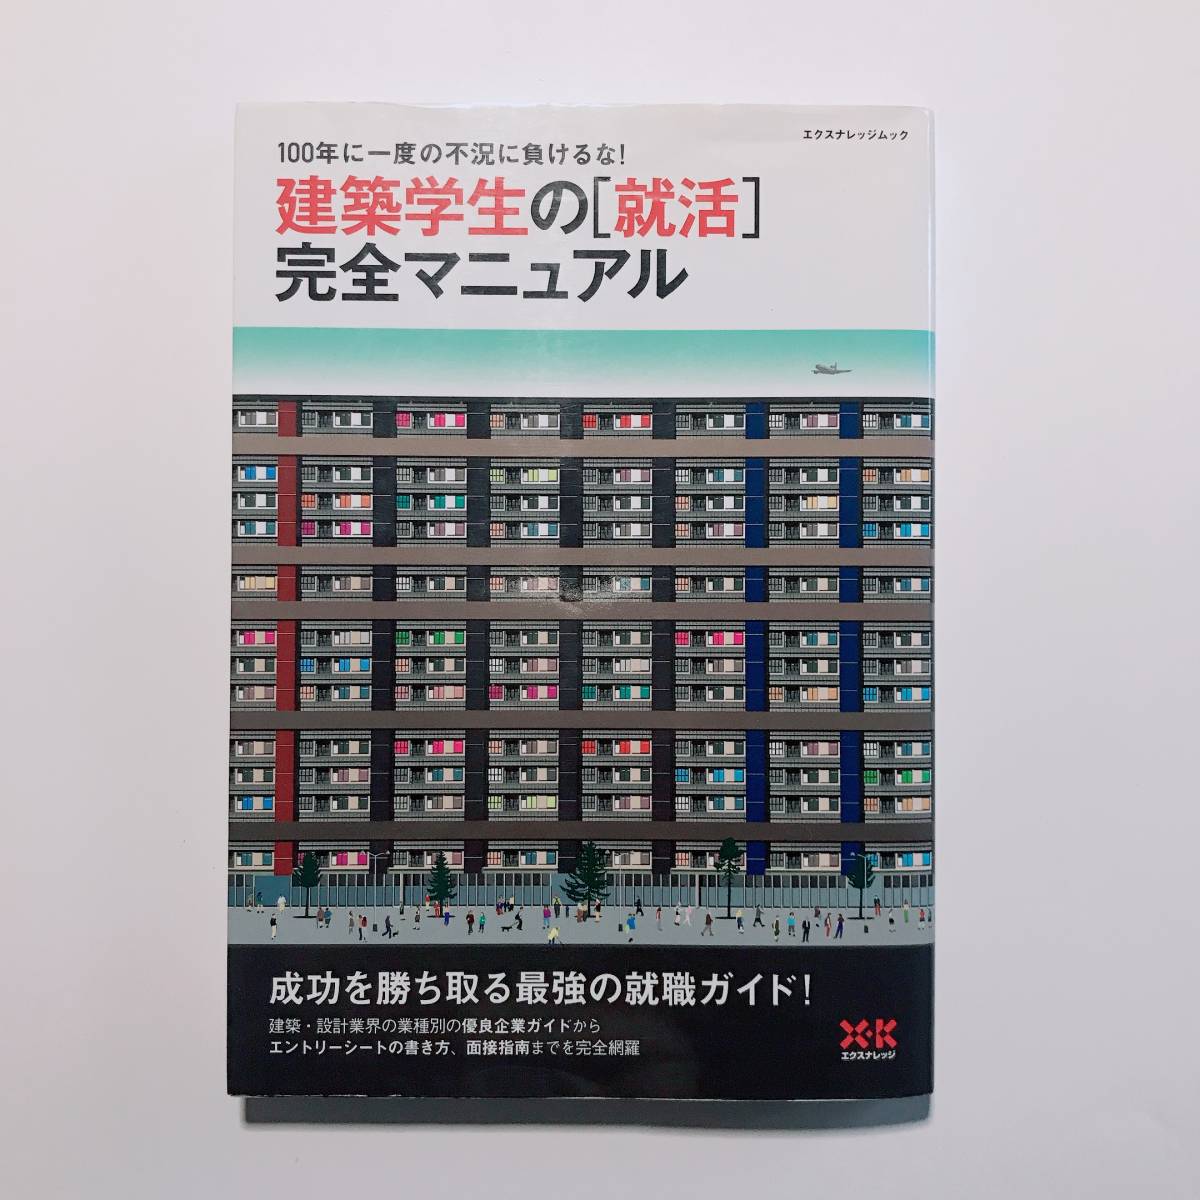 [ единая стоимость доставки 250 иен ][ строительство студент. [..] совершенно manual ]eks знания прошлое анализ 2008 2009 2010